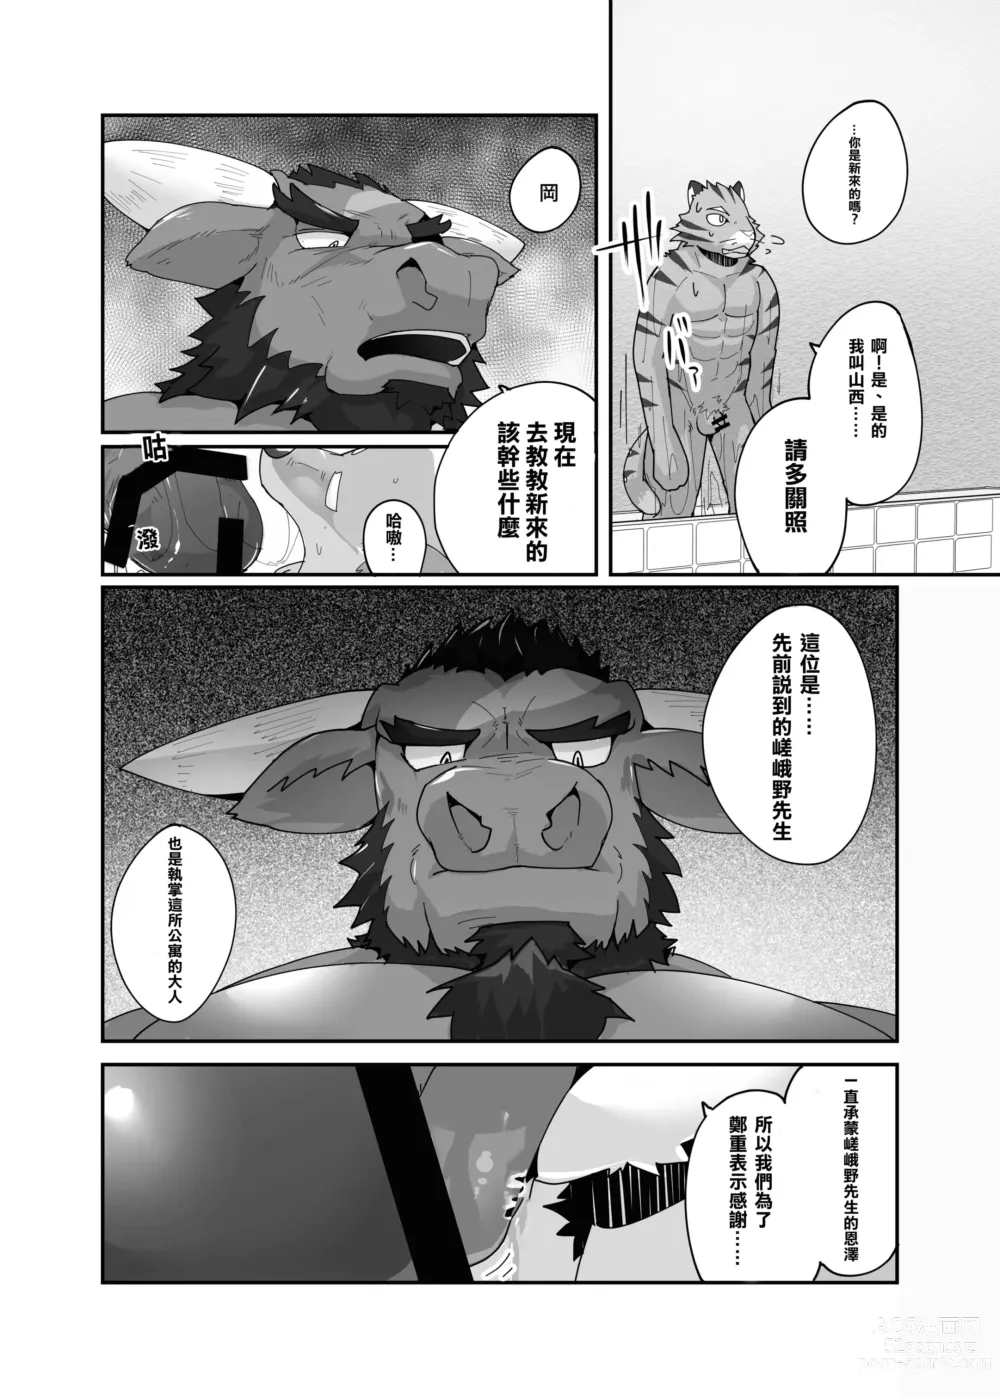 Page 11 of doujinshi 老式單身公寓中有位統御雄性們的主